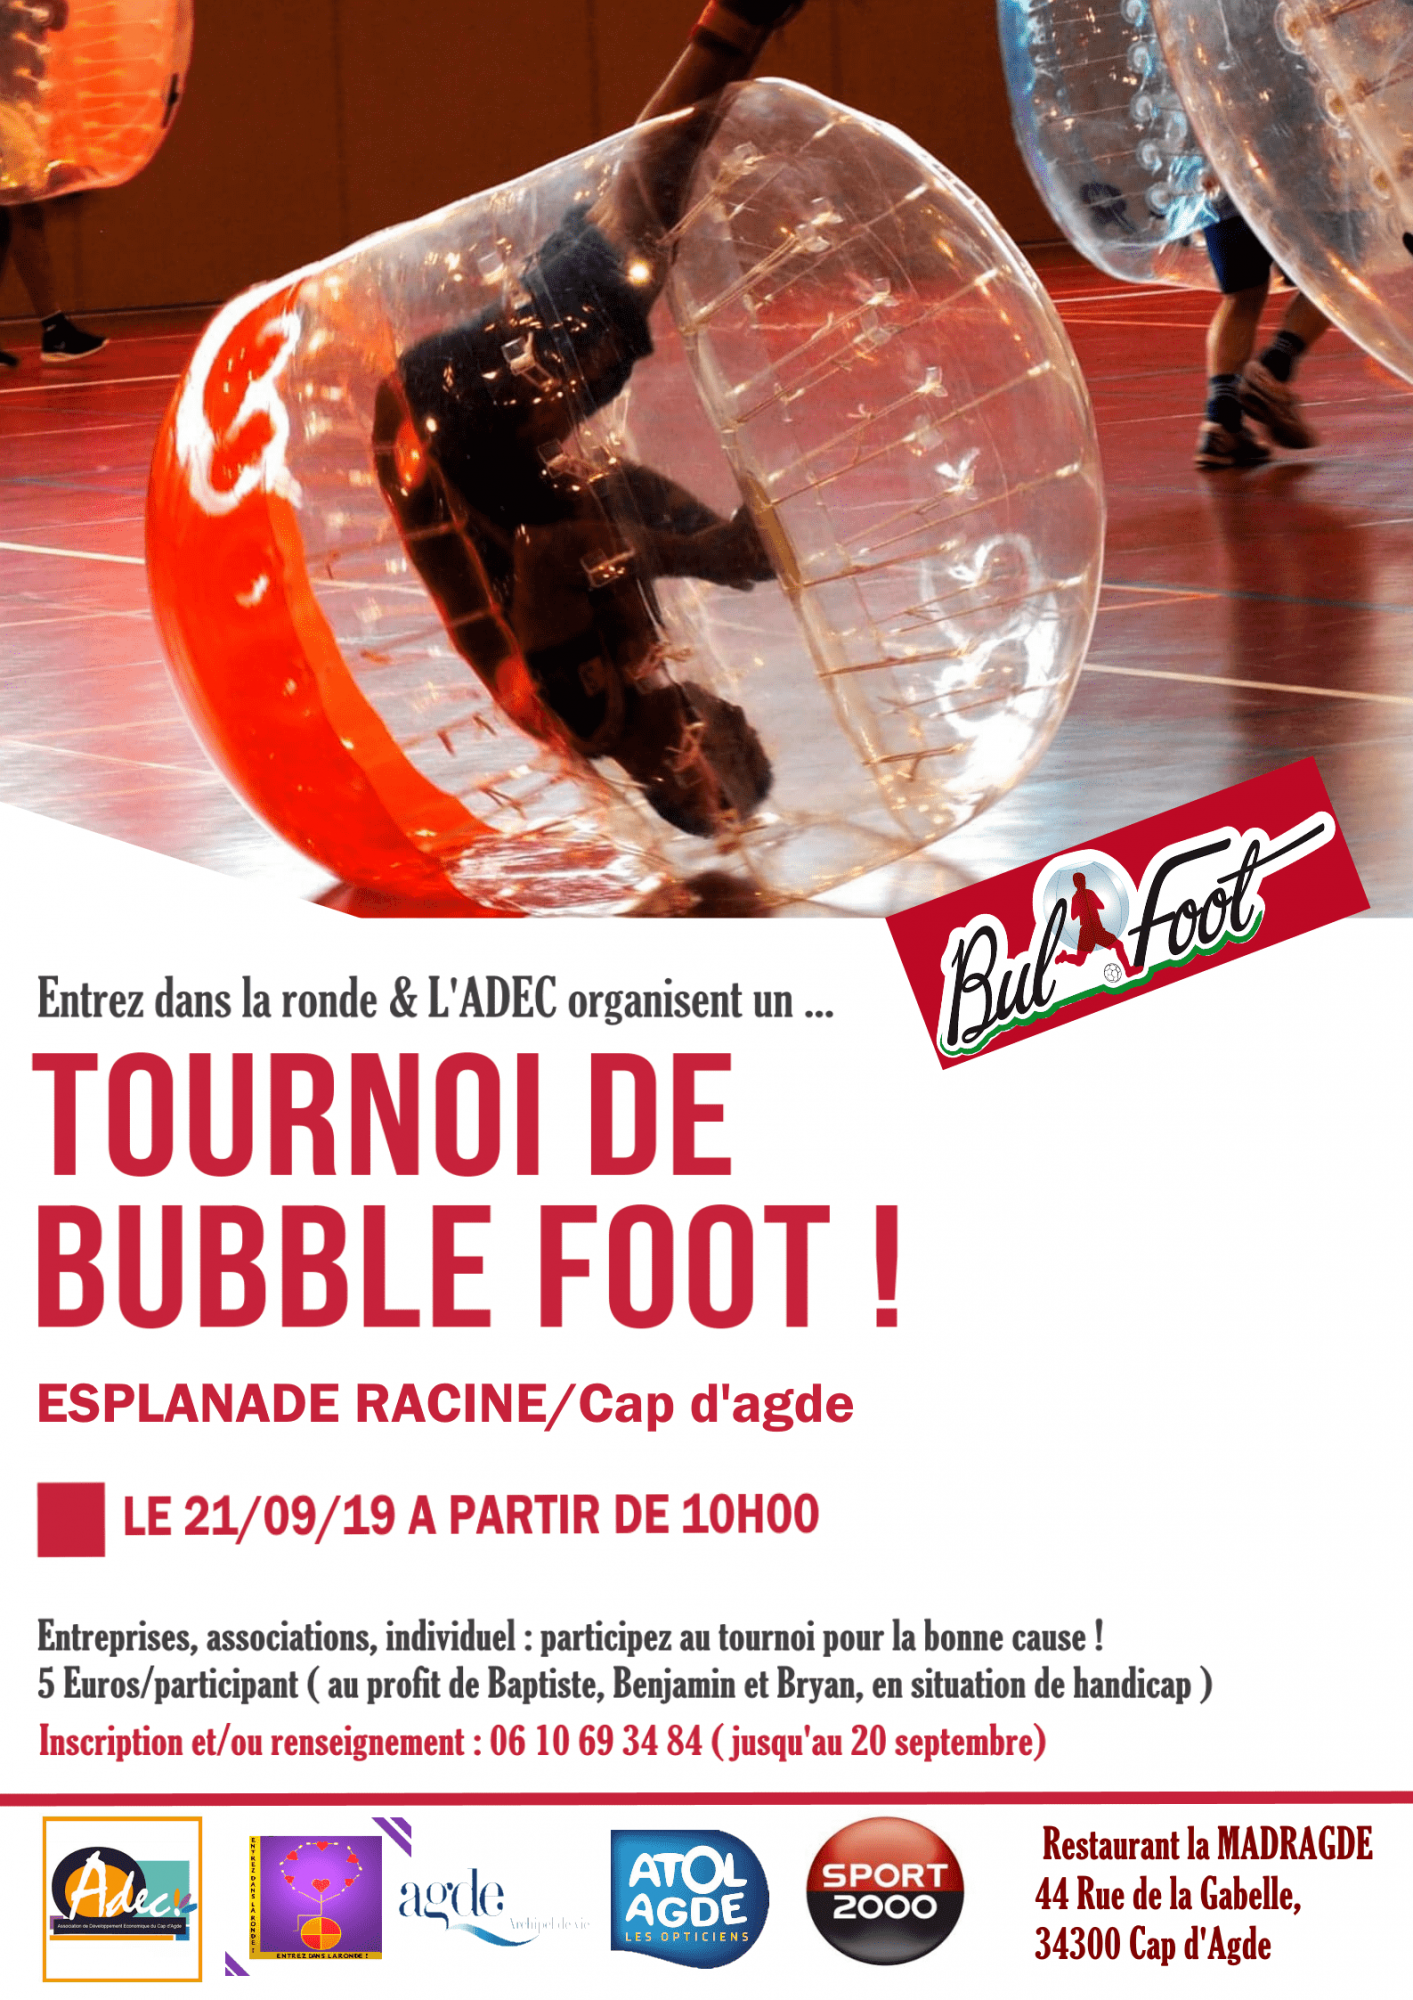 Cap d'Agde - Entrez dans la ronde organise un tournoi de bubble foot !